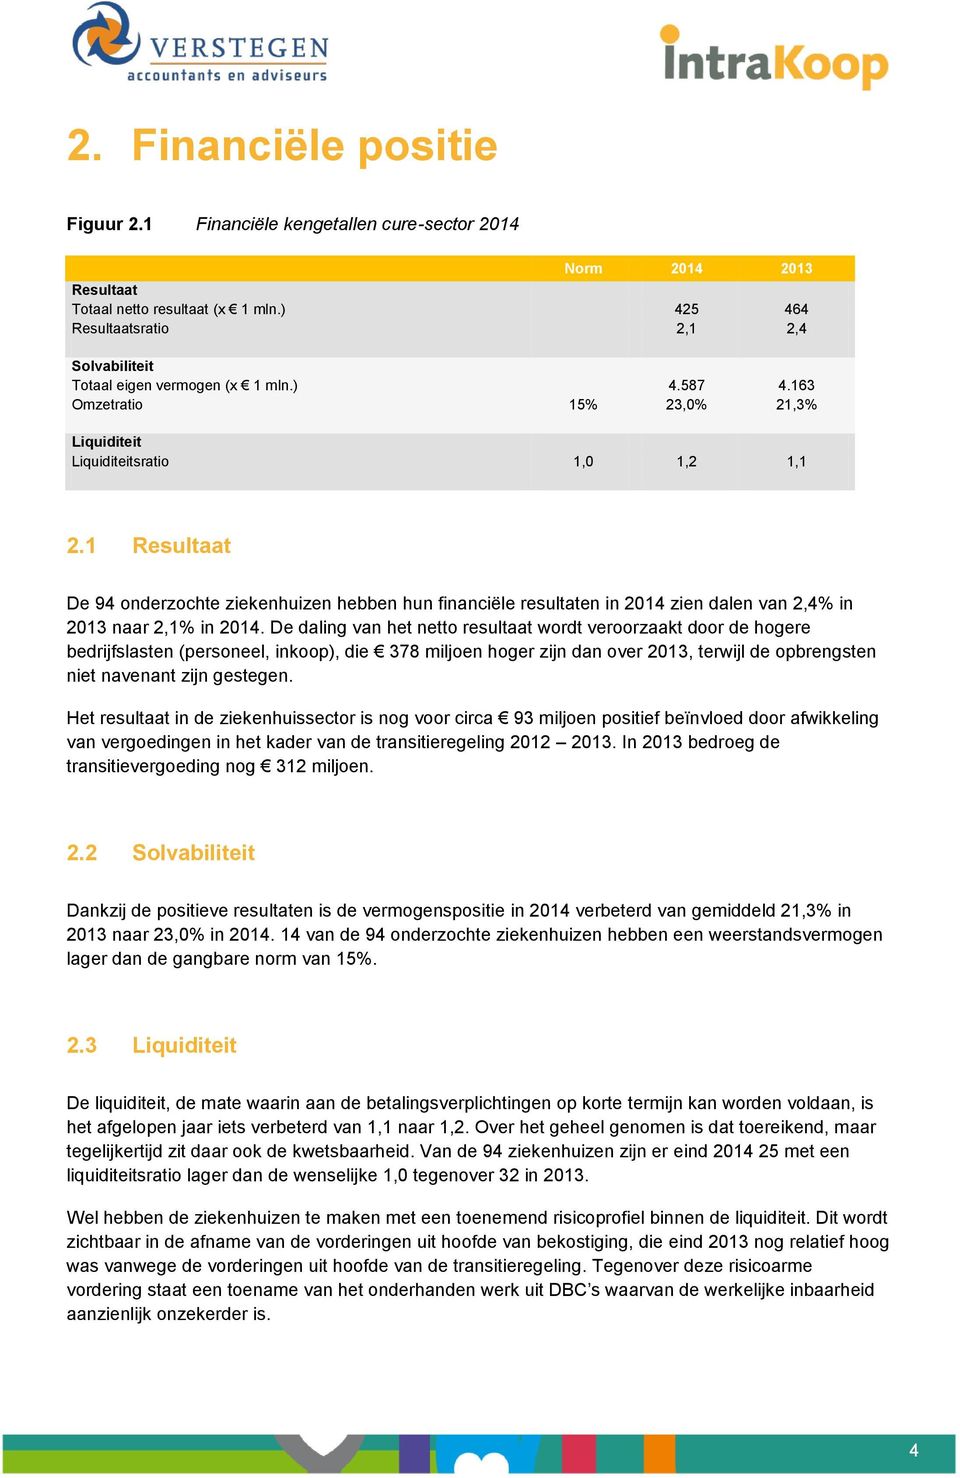 1 Resultaat De 94 onderzochte ziekenhuizen hebben hun financiële resultaten in 2014 zien dalen van 2,4% in 2013 naar 2,1% in 2014.